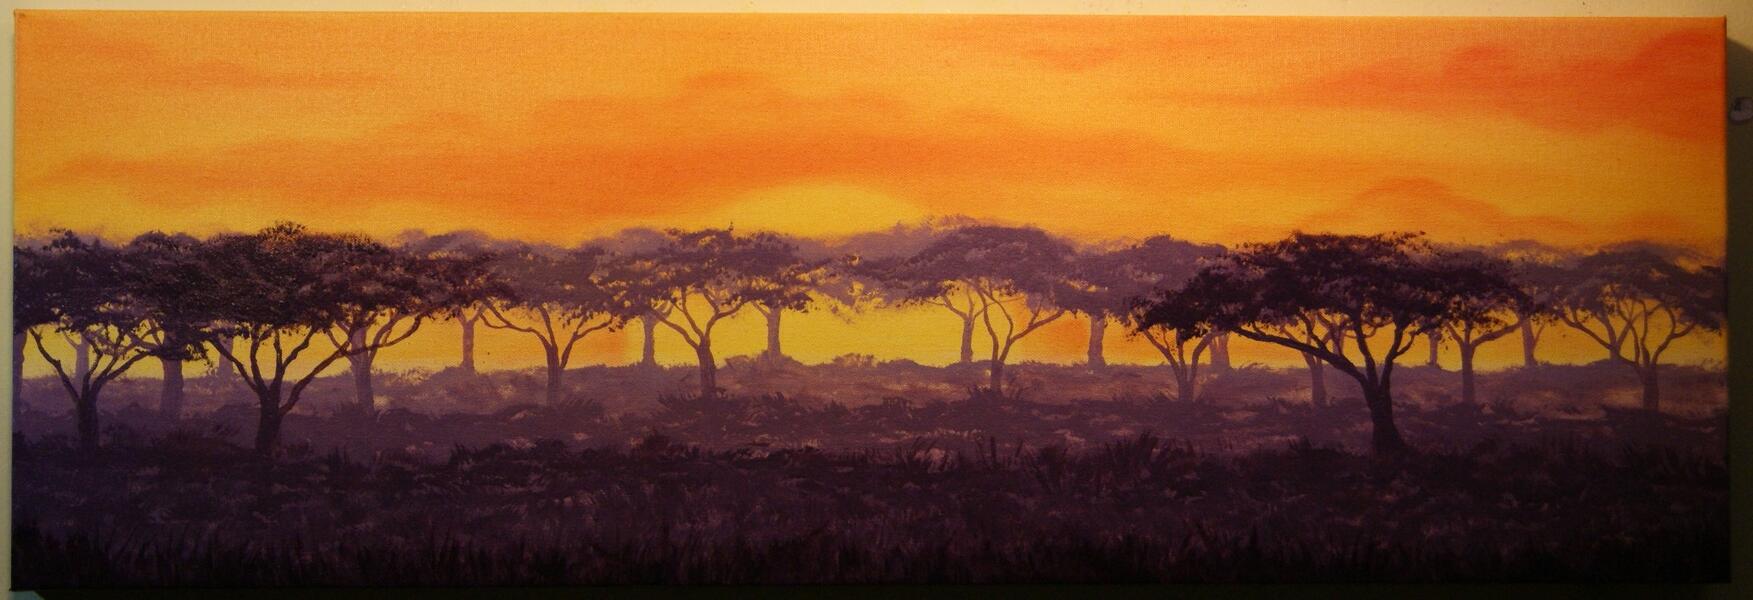 savanna sunset